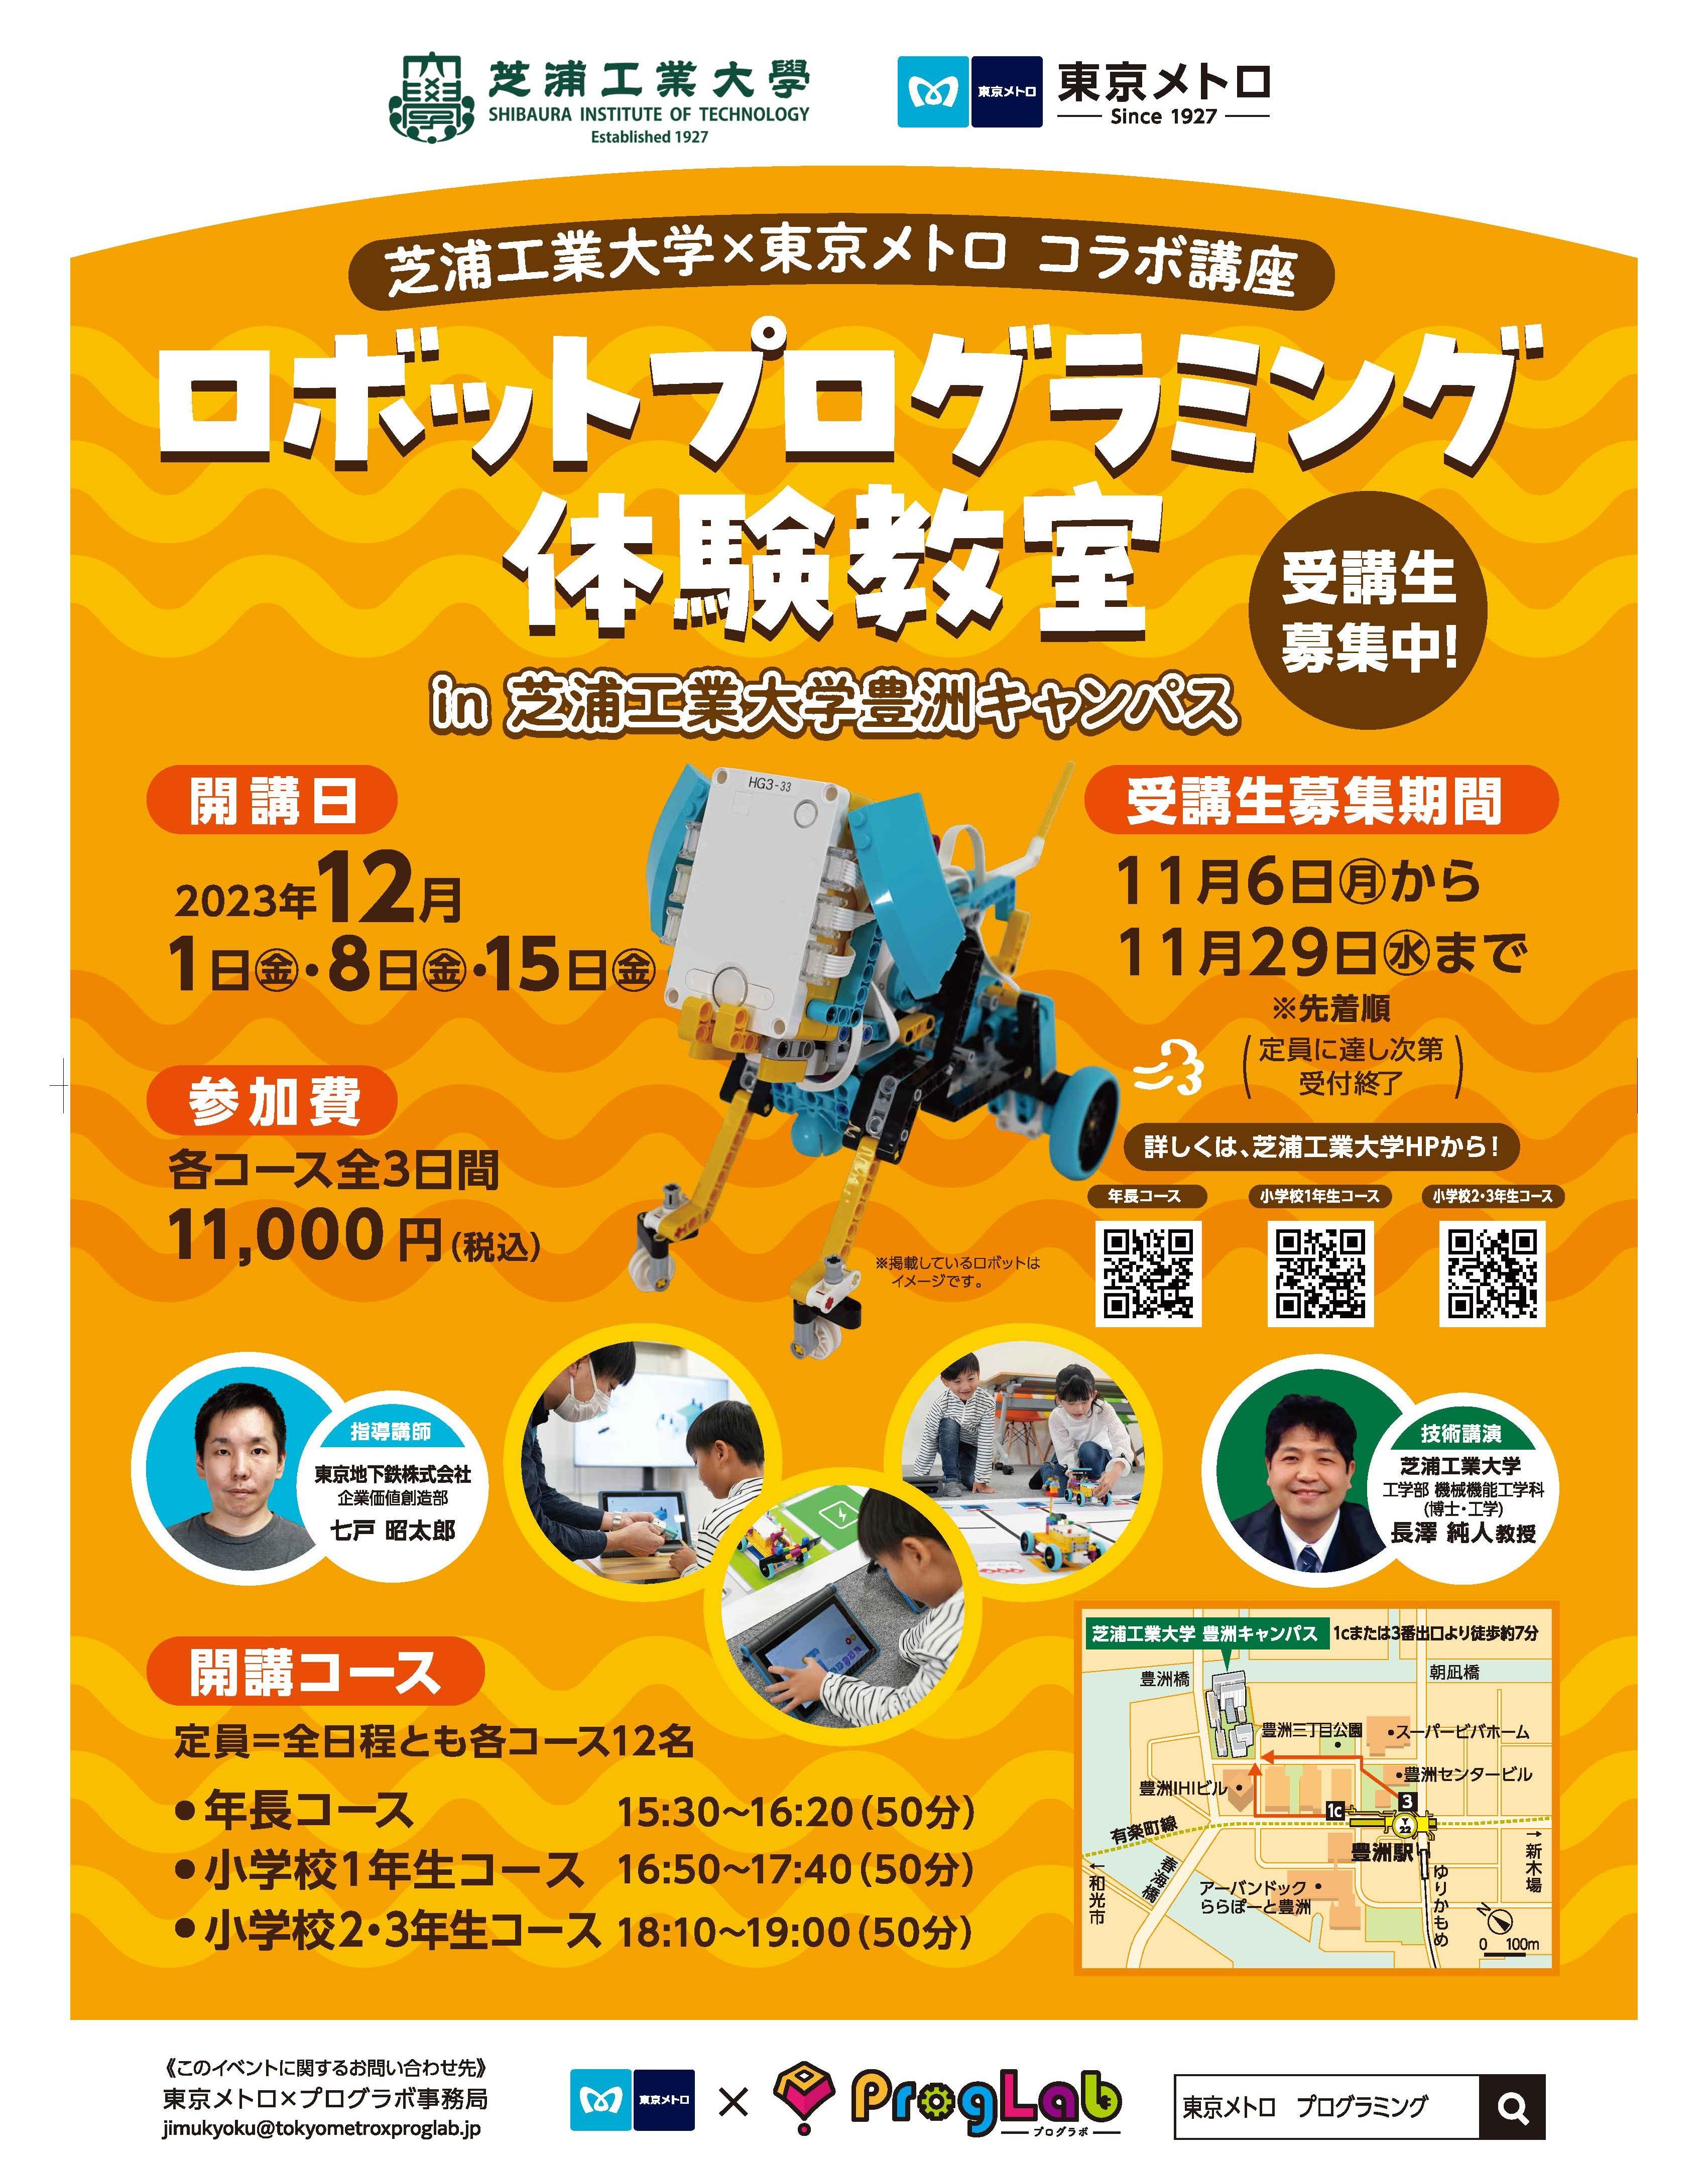 【芝浦工業大学ニュース】「東京メトロ×プログラボ」×芝浦工業大学 ロボットプログラミングのコラボ講座を初開催します！